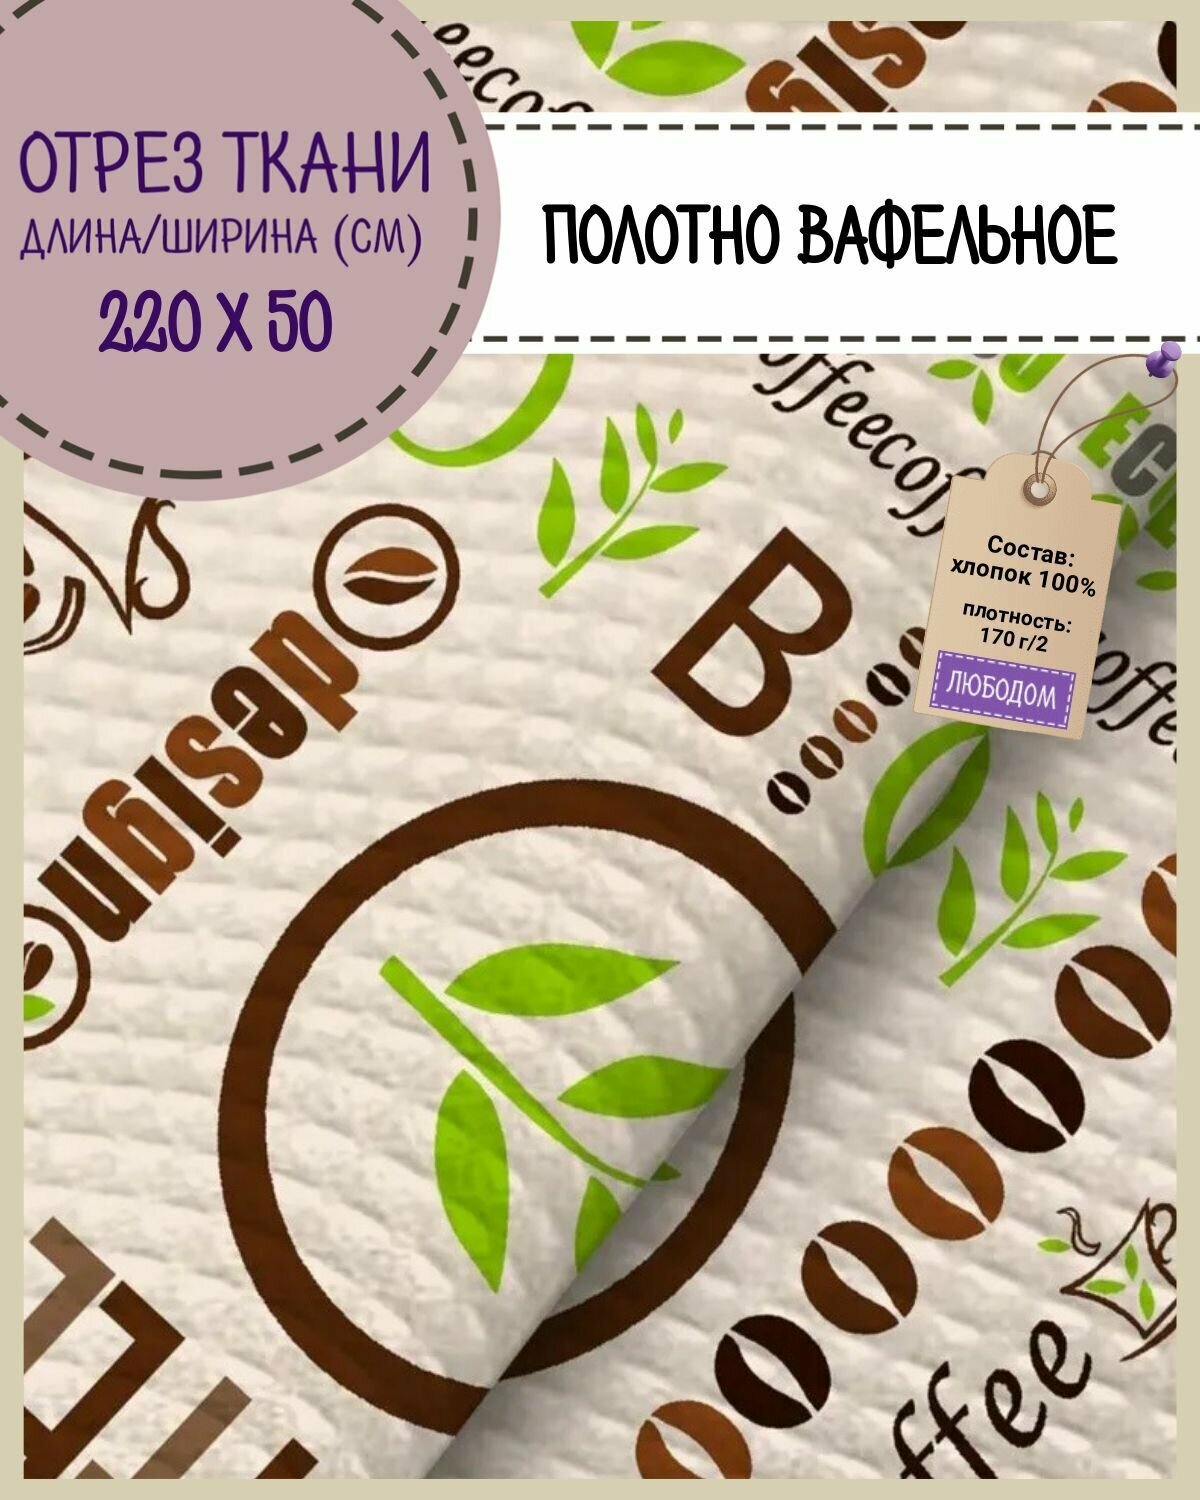 Отрез ткани Полотно вафельное "Bio coffee", 100% хлопок, ш-50 см, цена за отрез 50 х 220 см